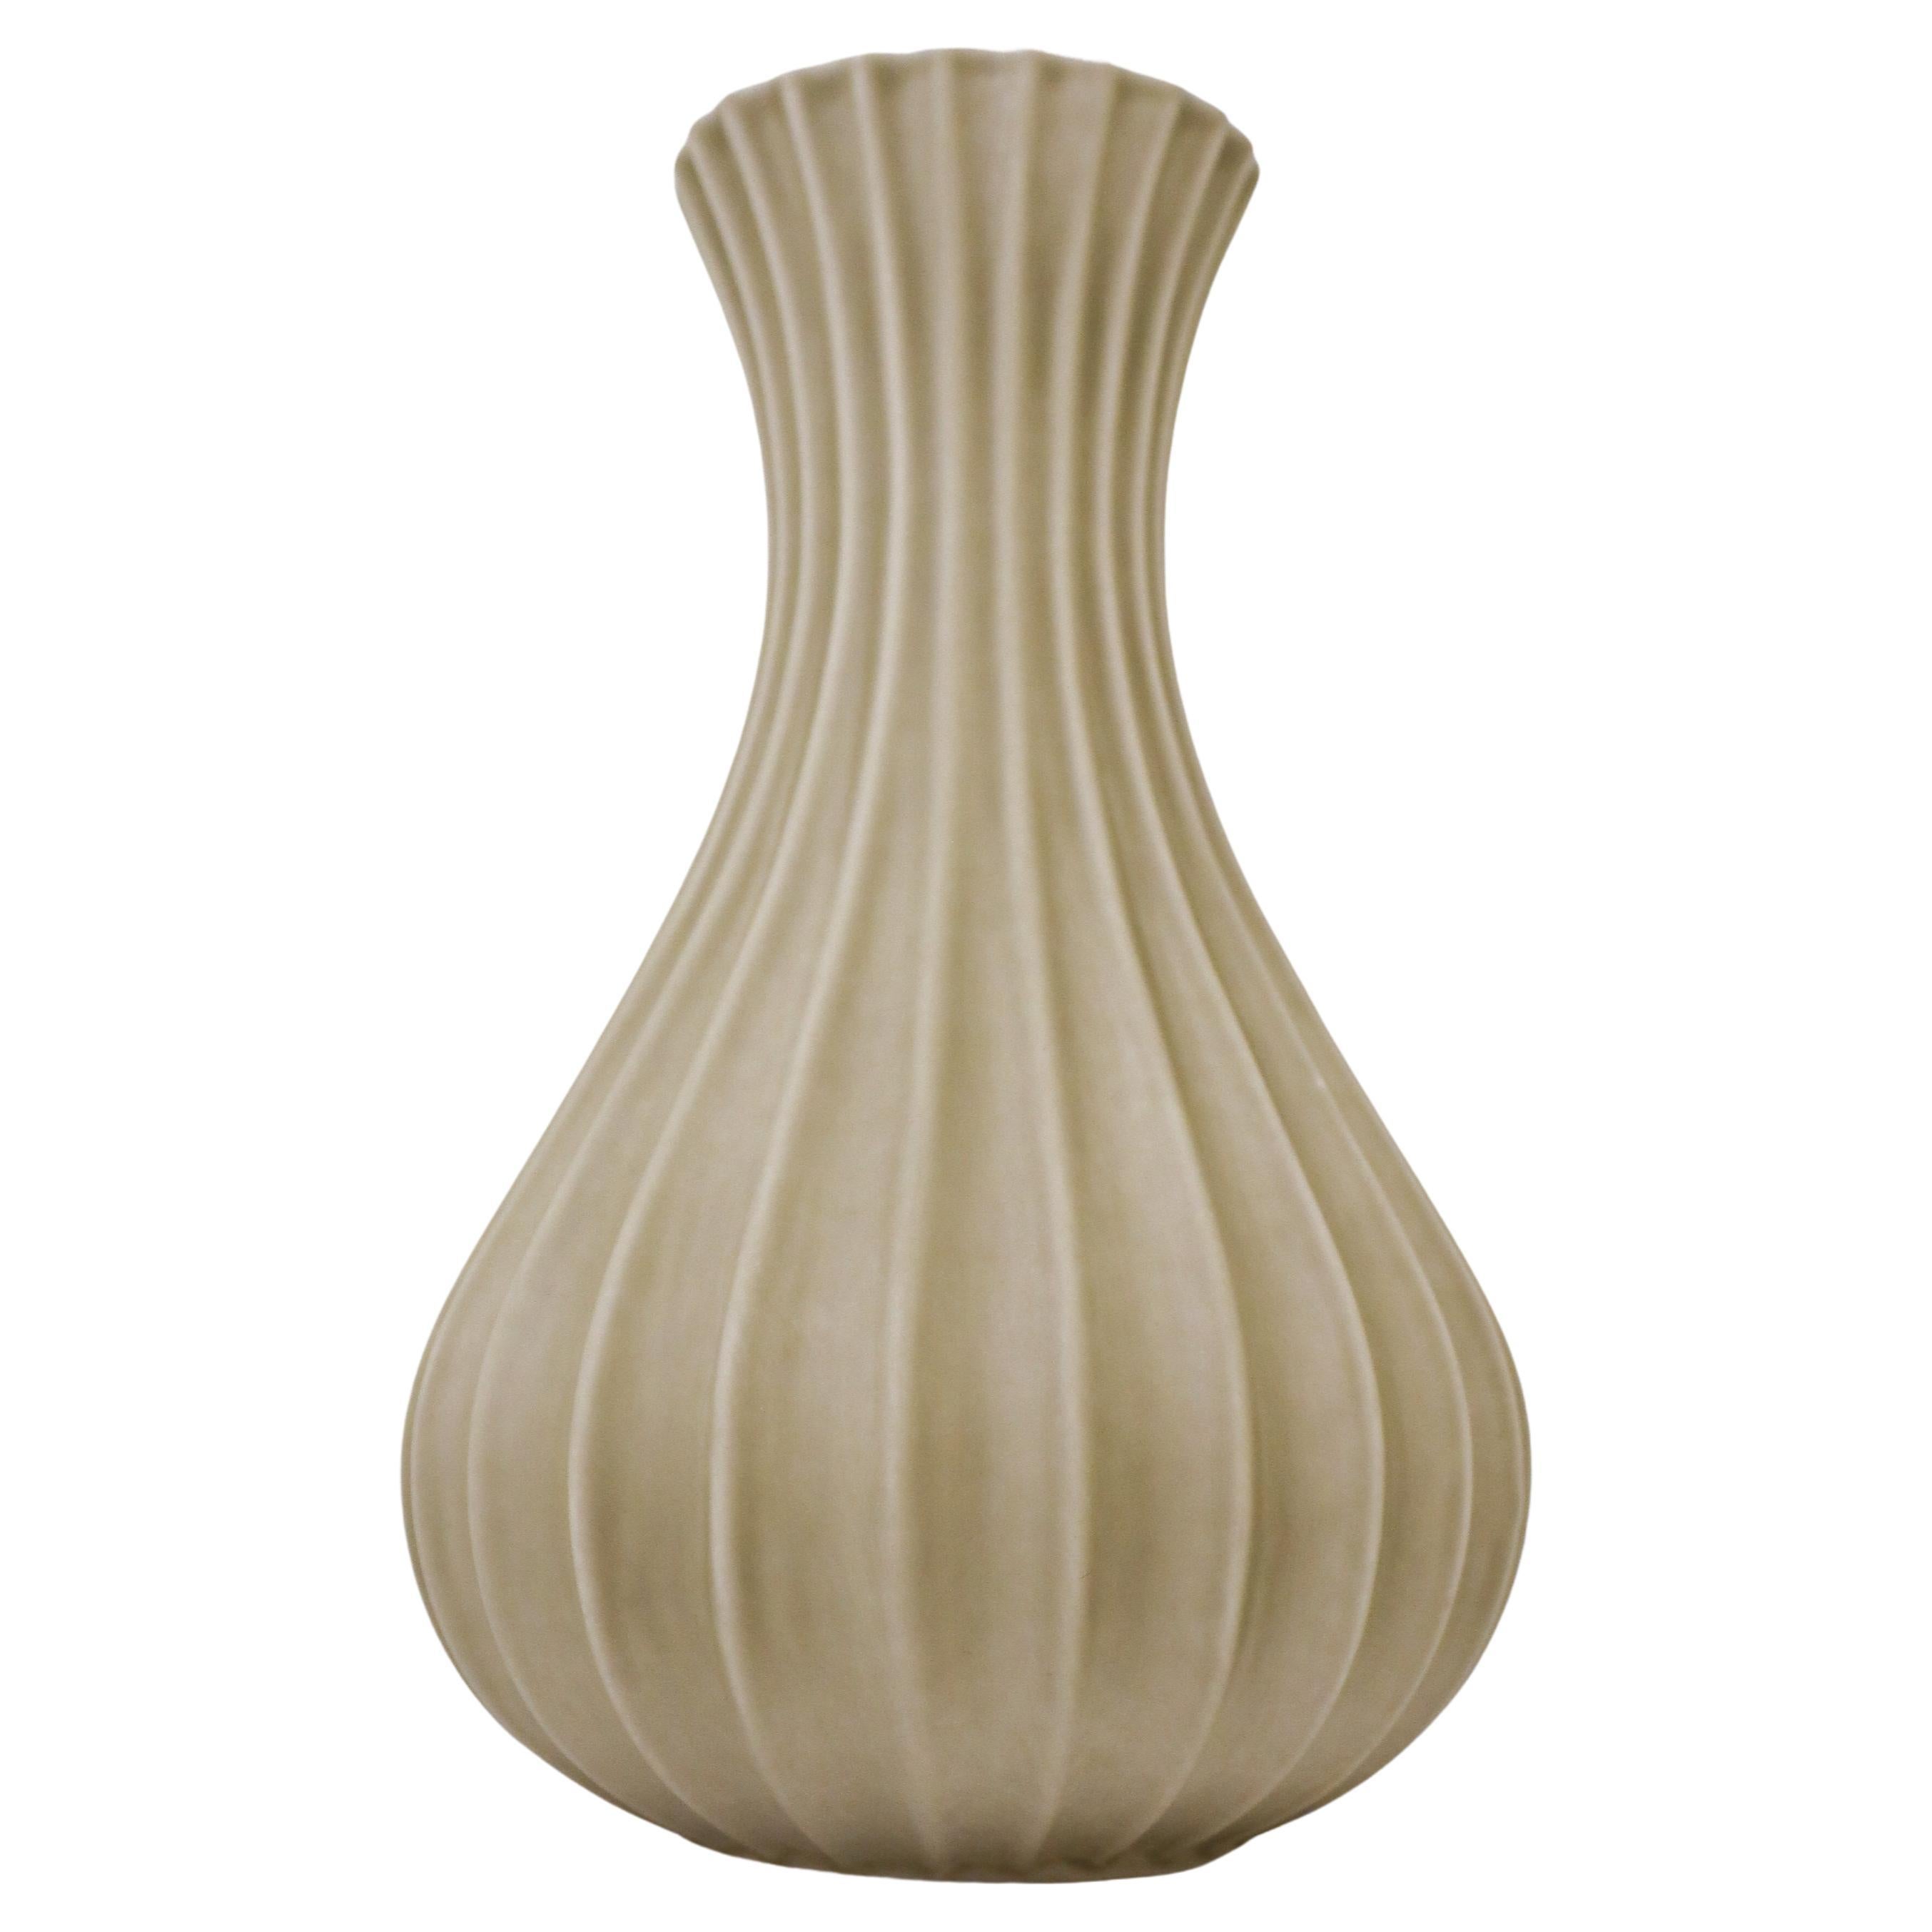 Olive Green / Grey Ceramic Vase, Pia Rönndahl Rörstrand, Scandinavian Modern